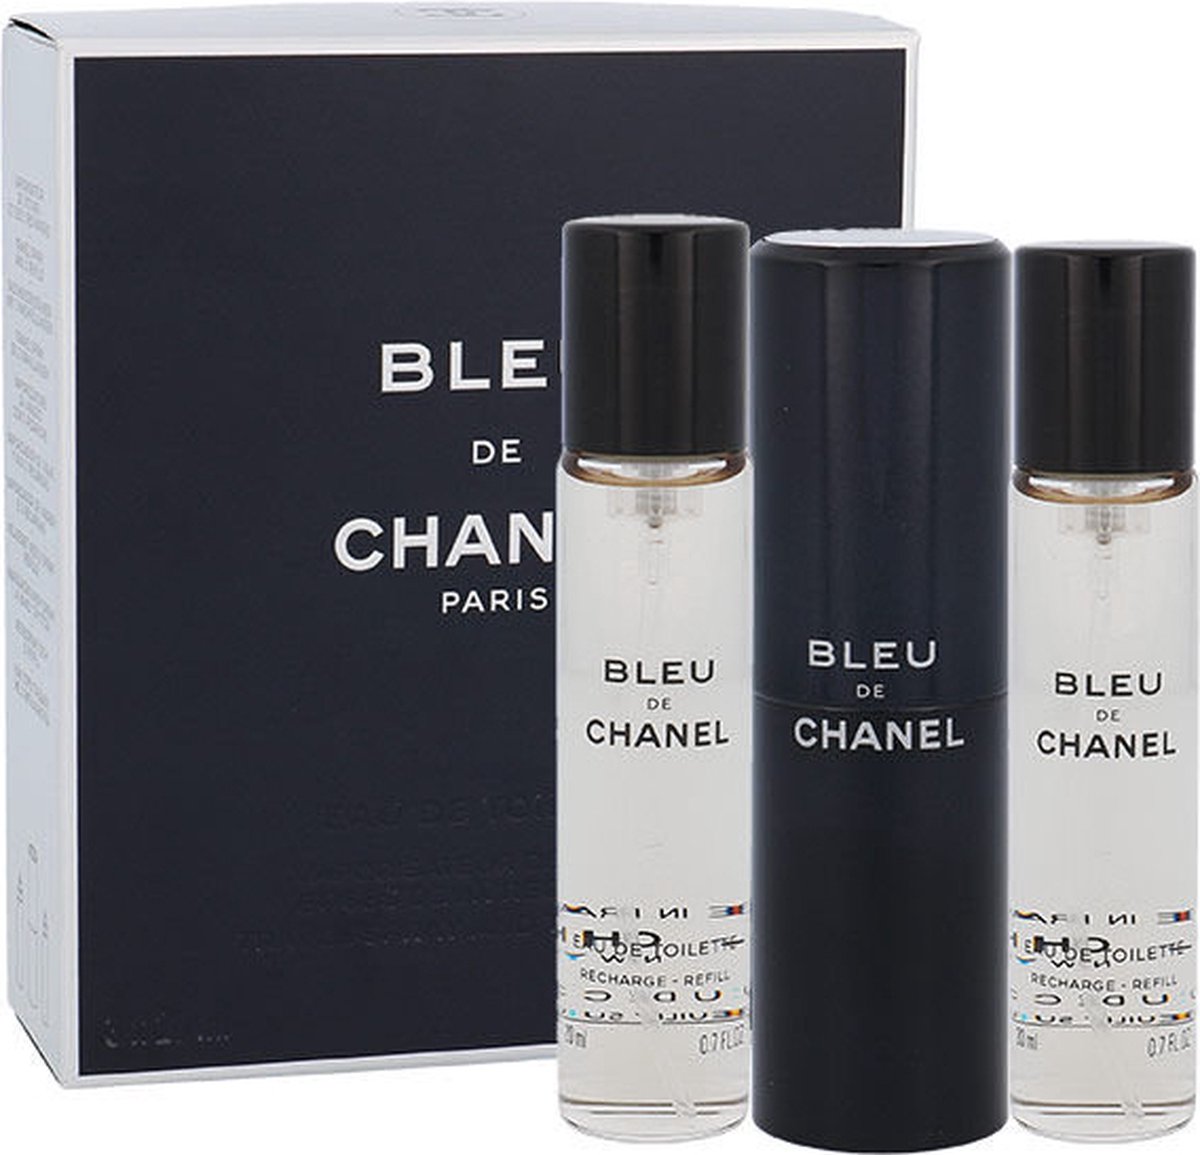 Chanel Bleu de Chanel Geschenkset - Eau de Toilette + 2x Eau de